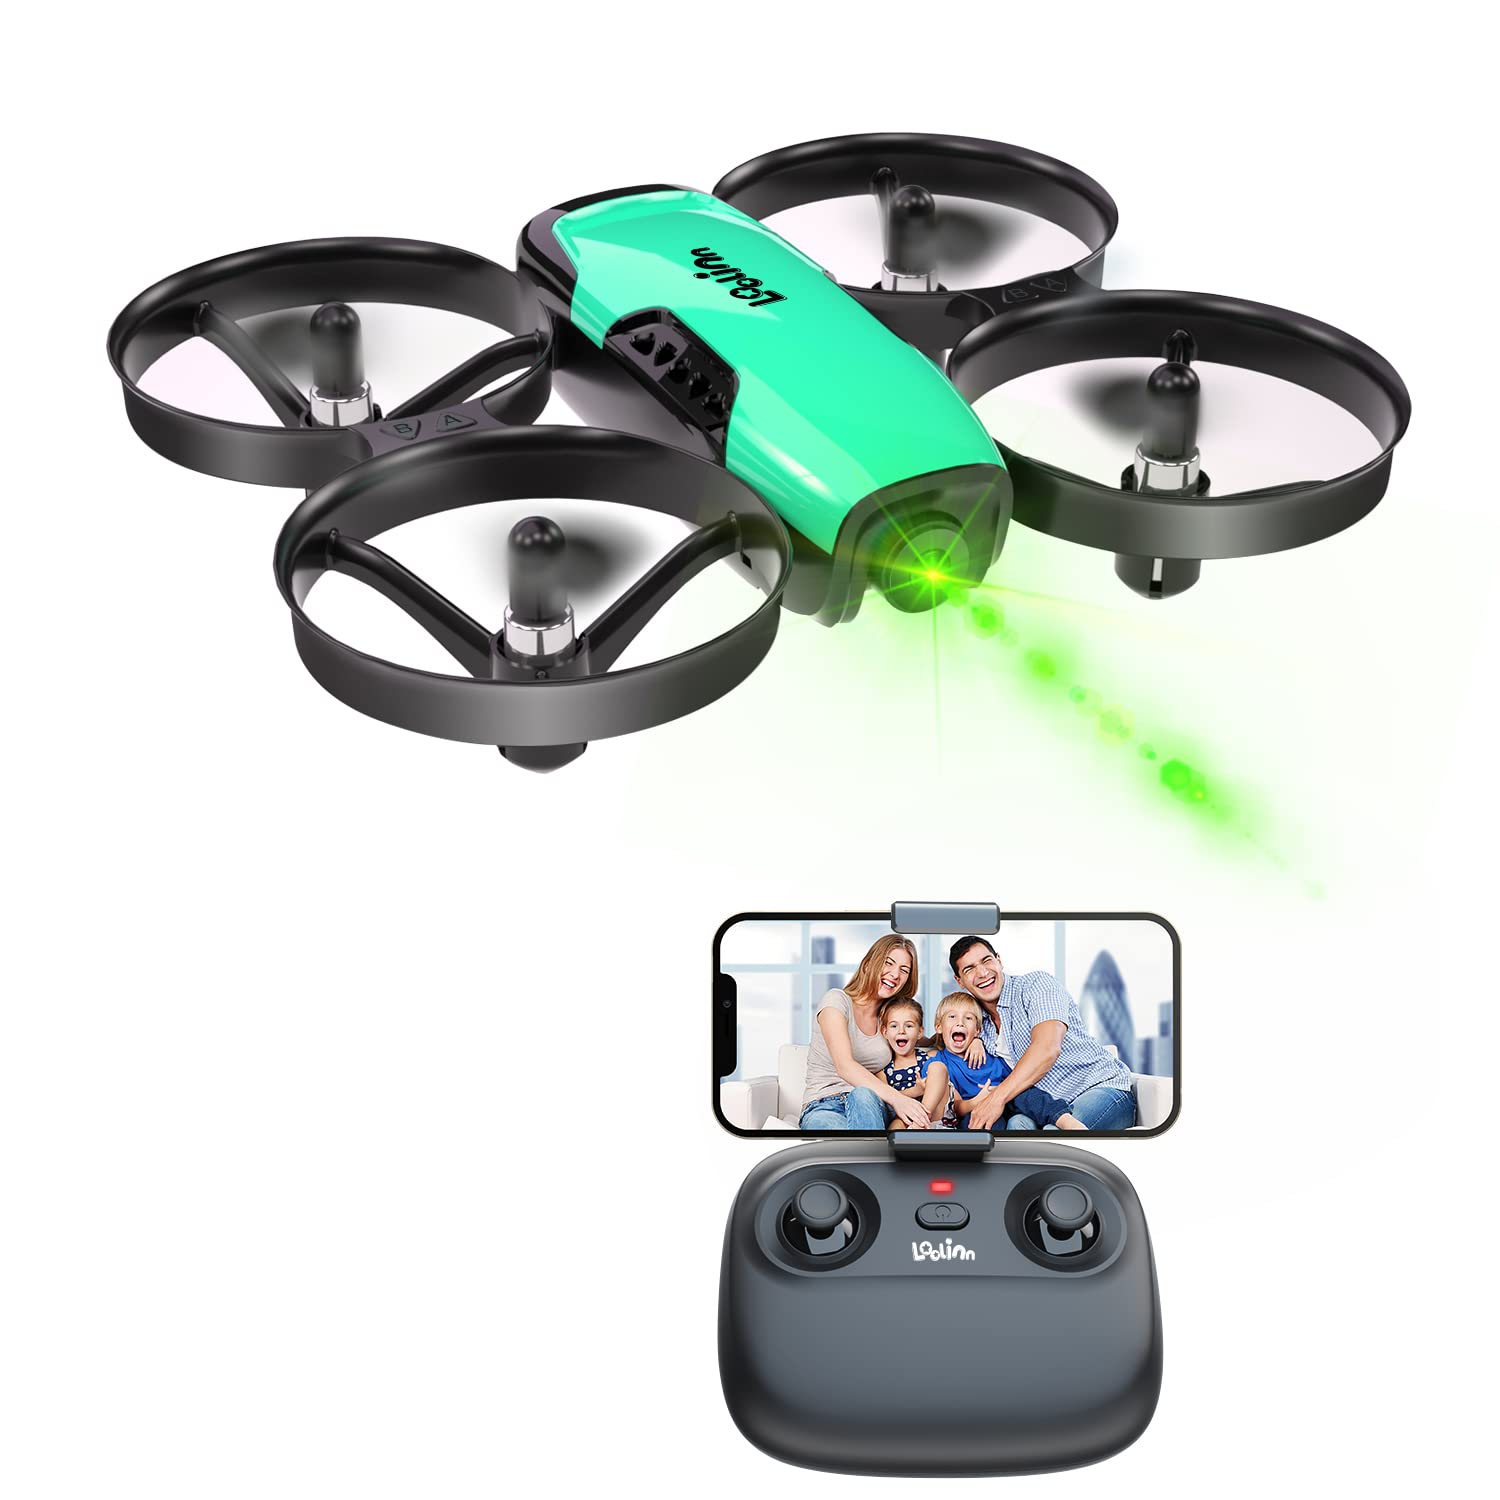 Loolinn | Drohne mit Kamera als Geschenk für Kinder - Mini Drohne Ferngesteuert, First Person View Kameradrohnen (FPV) mit Video & Fotos/Einstellbare Kamera/Zwei Batterien